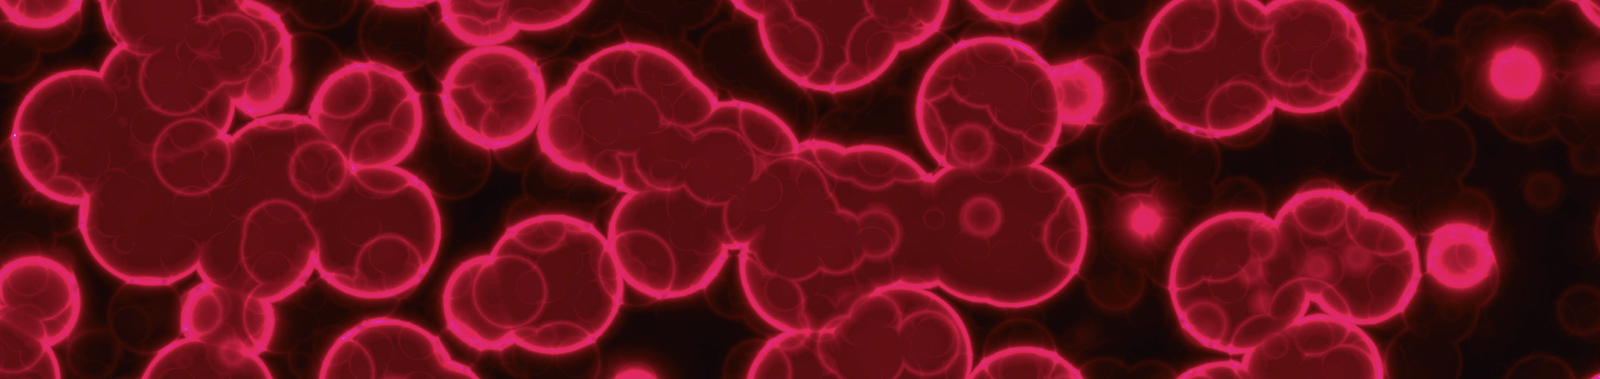 Mikroskopische Aufnahme von roten Blutkörperchen